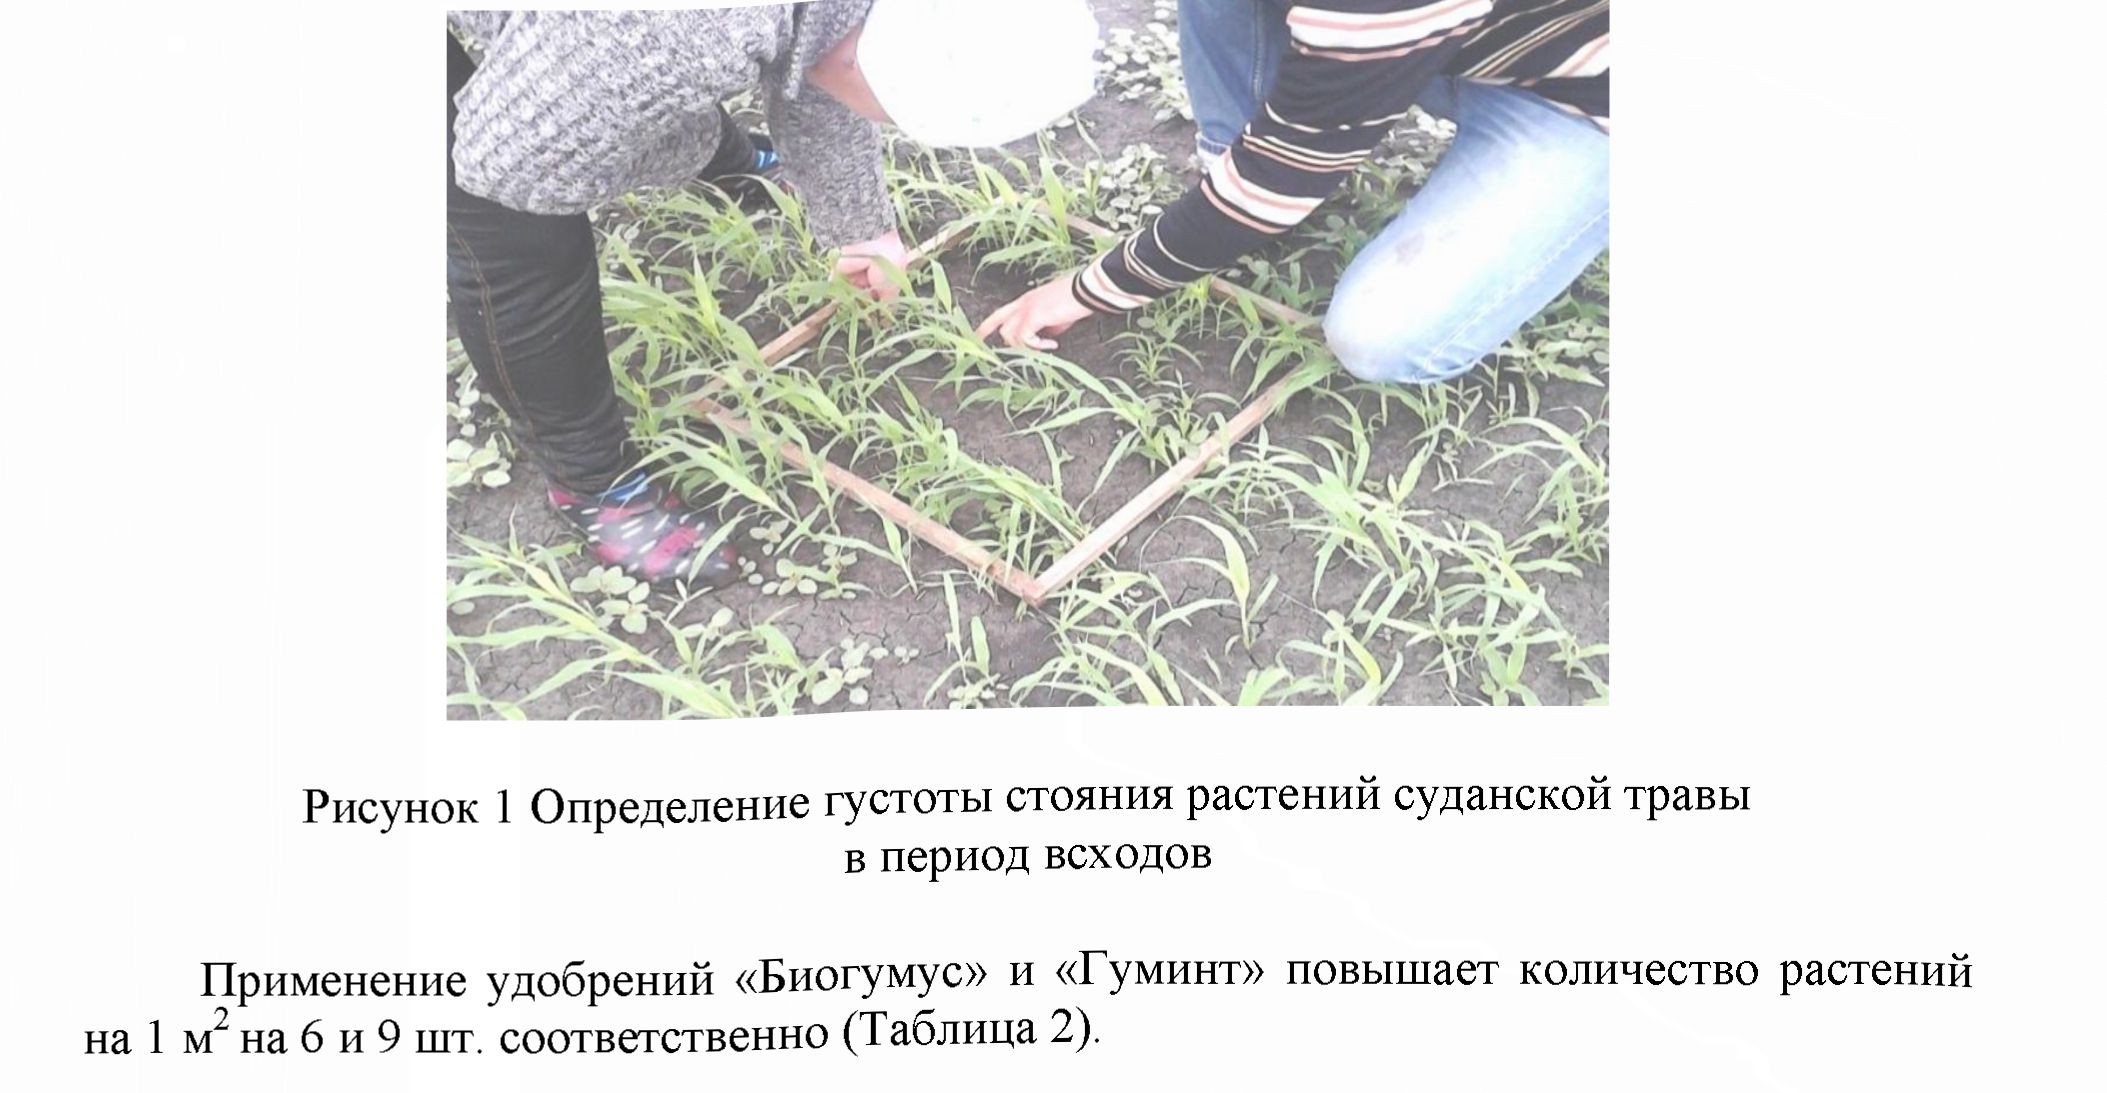 Эффективность внесения удобрений в период посевов гуминта и биогумуса при возделывании суданской травы на семена в условиях СКО